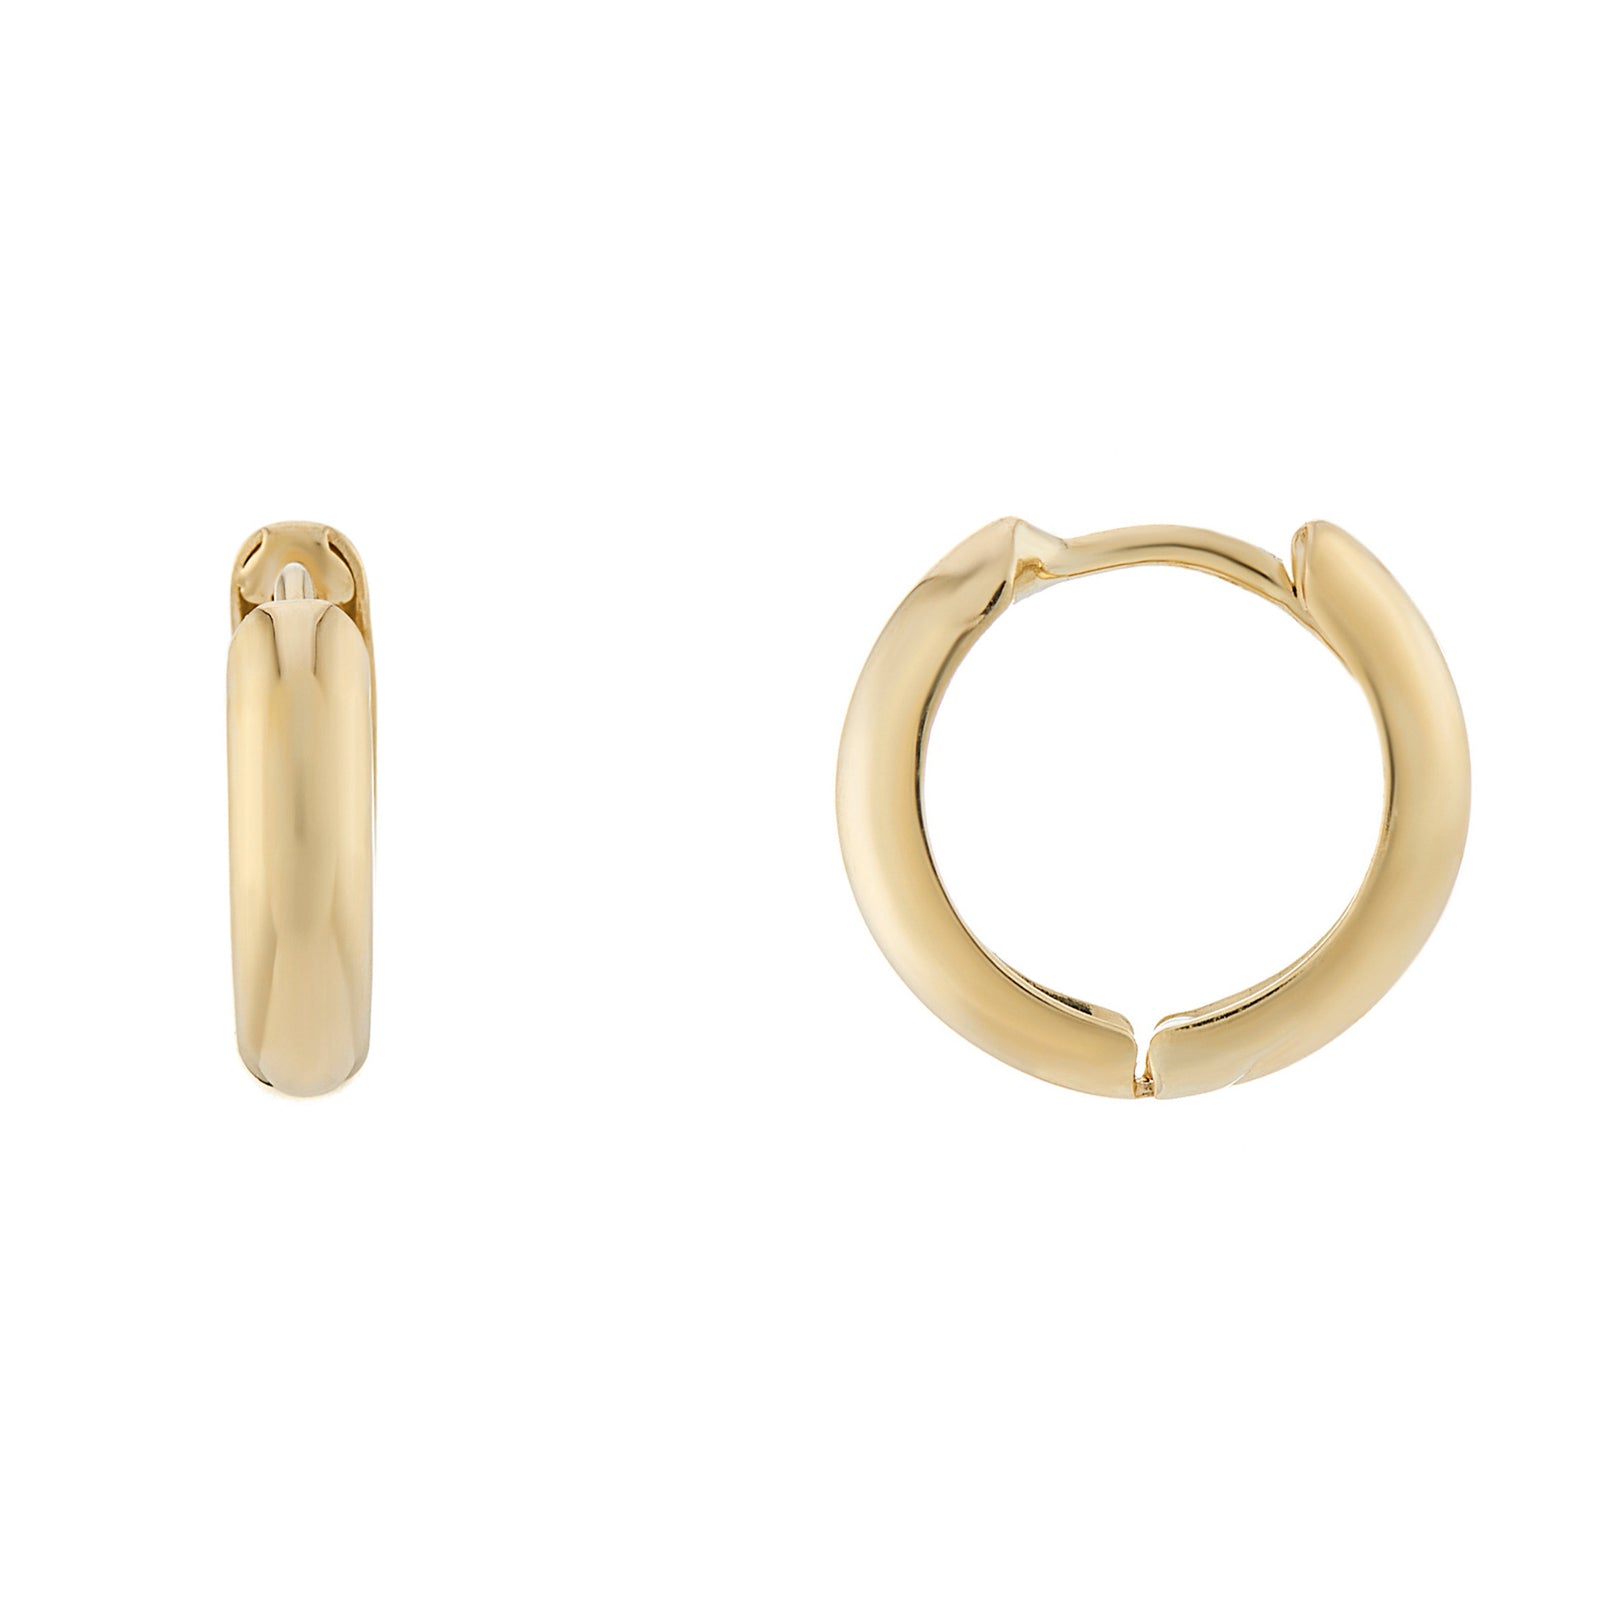 9ct gold 9mm inside diameter huggy earrings